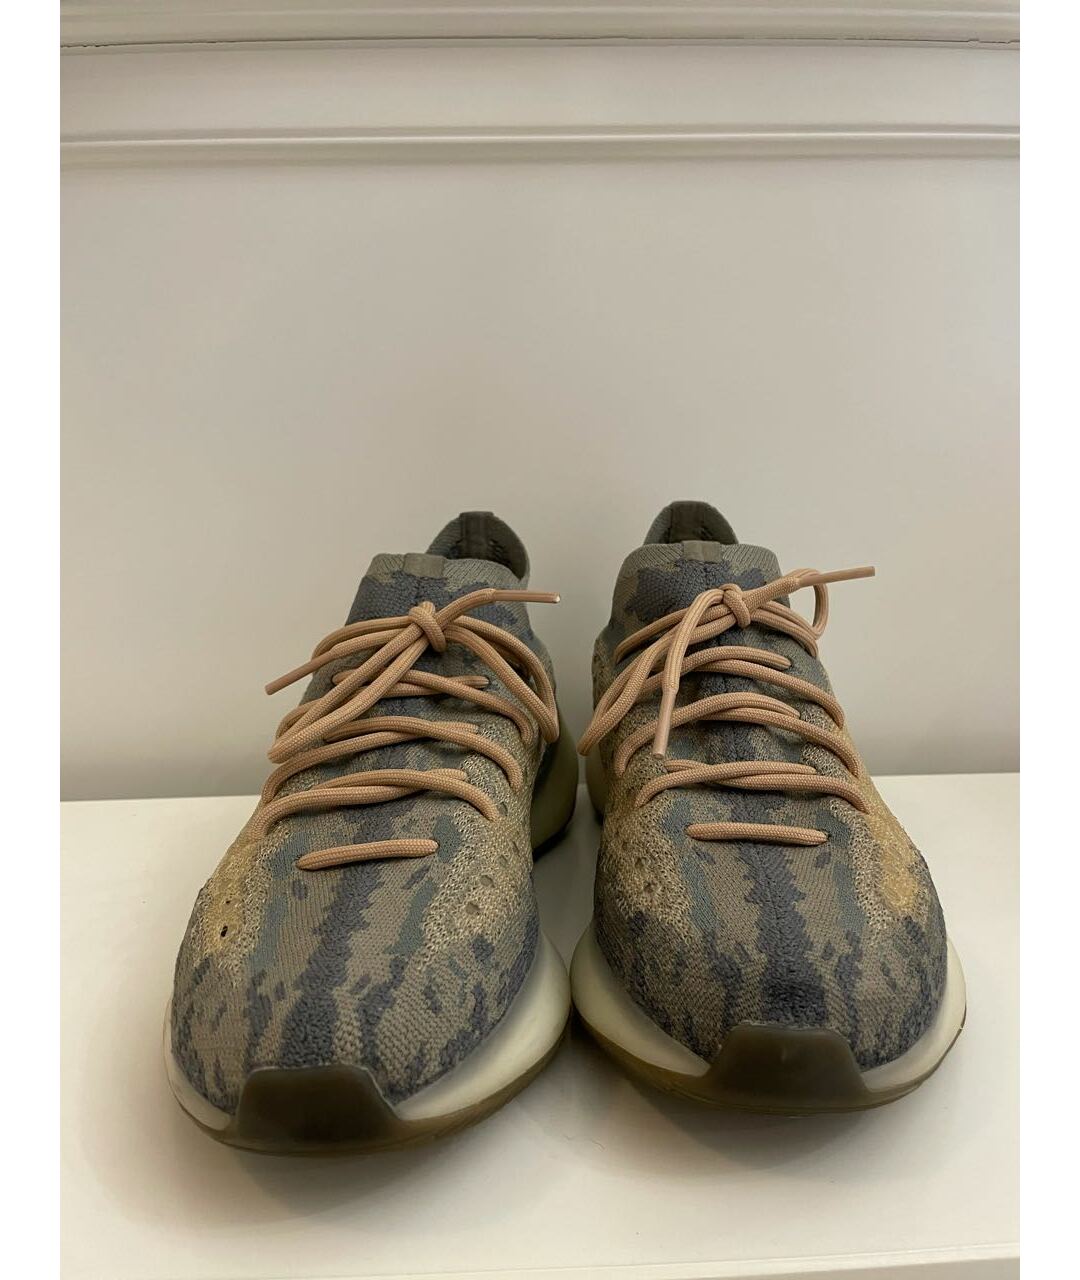 ADIDAS YEEZY Бежевые текстильные низкие кроссовки / кеды, фото 2